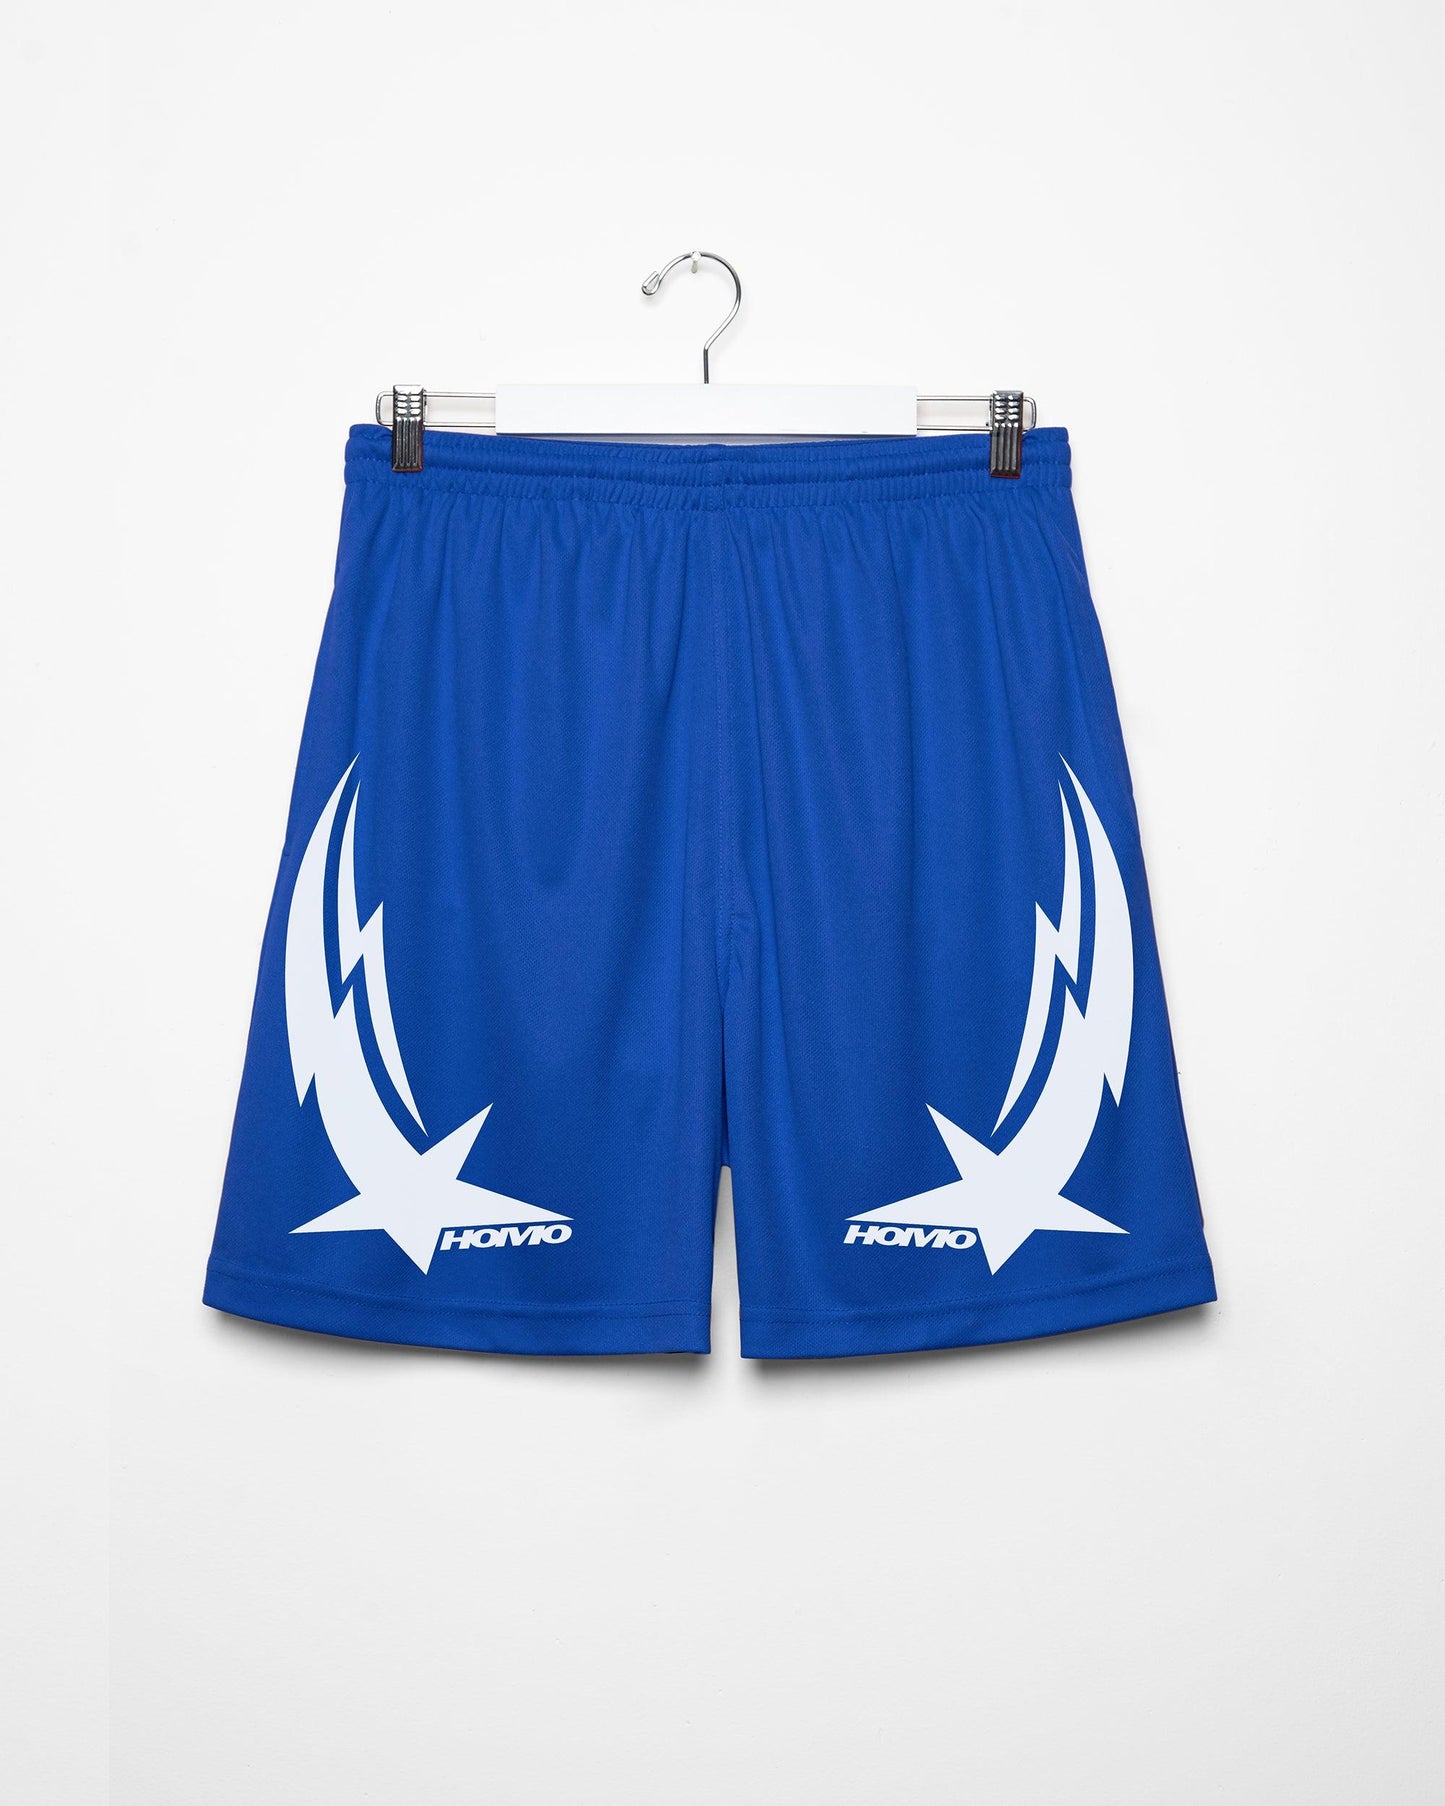 Turbo basketball shorts, white on blue